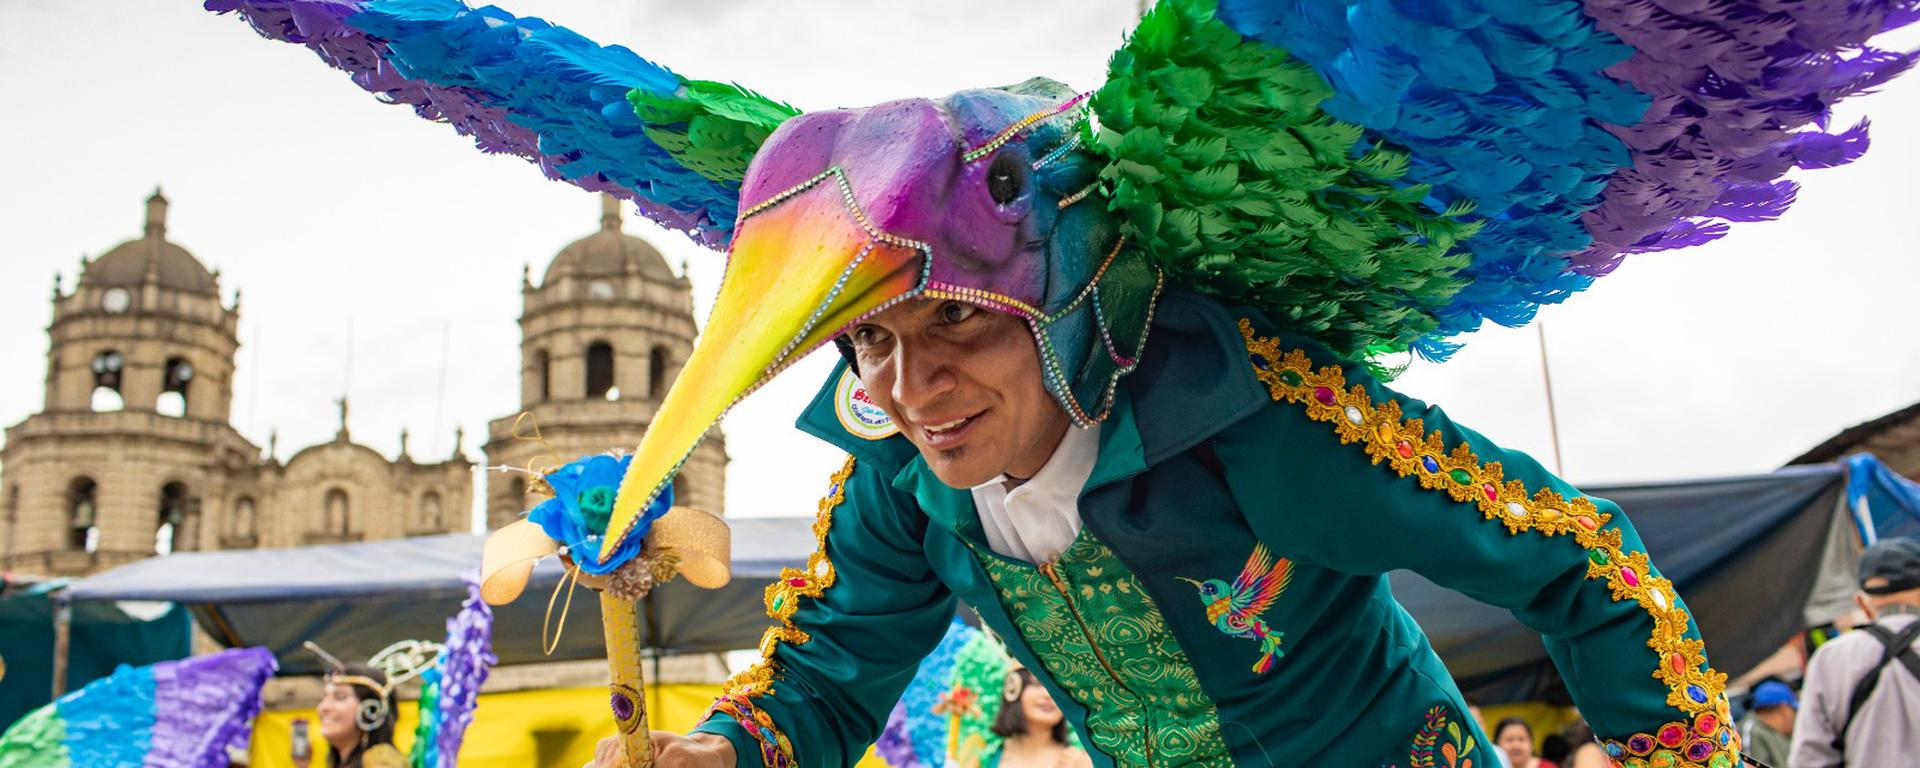 Carnaval de Cajamarca: lo que no viste de la tradicional festividad que dejó un gran impacto económico en la región | FOTOS Y VIDEO